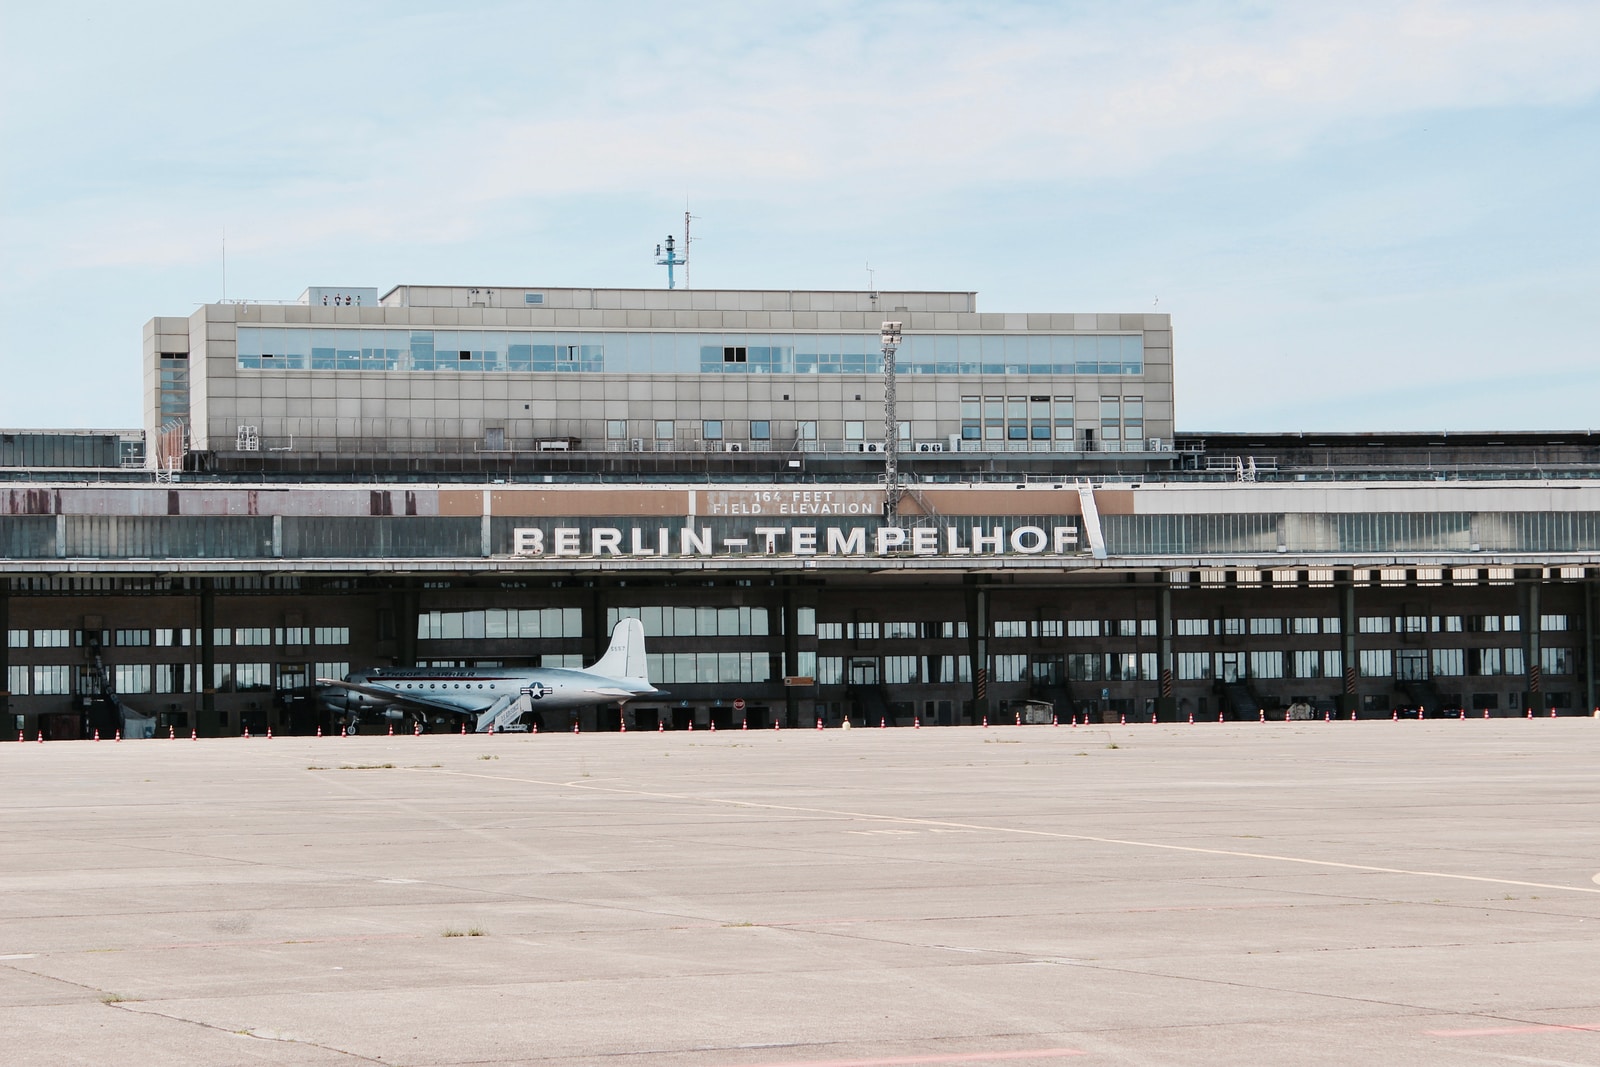 Berling lufthavn - Tempelhof